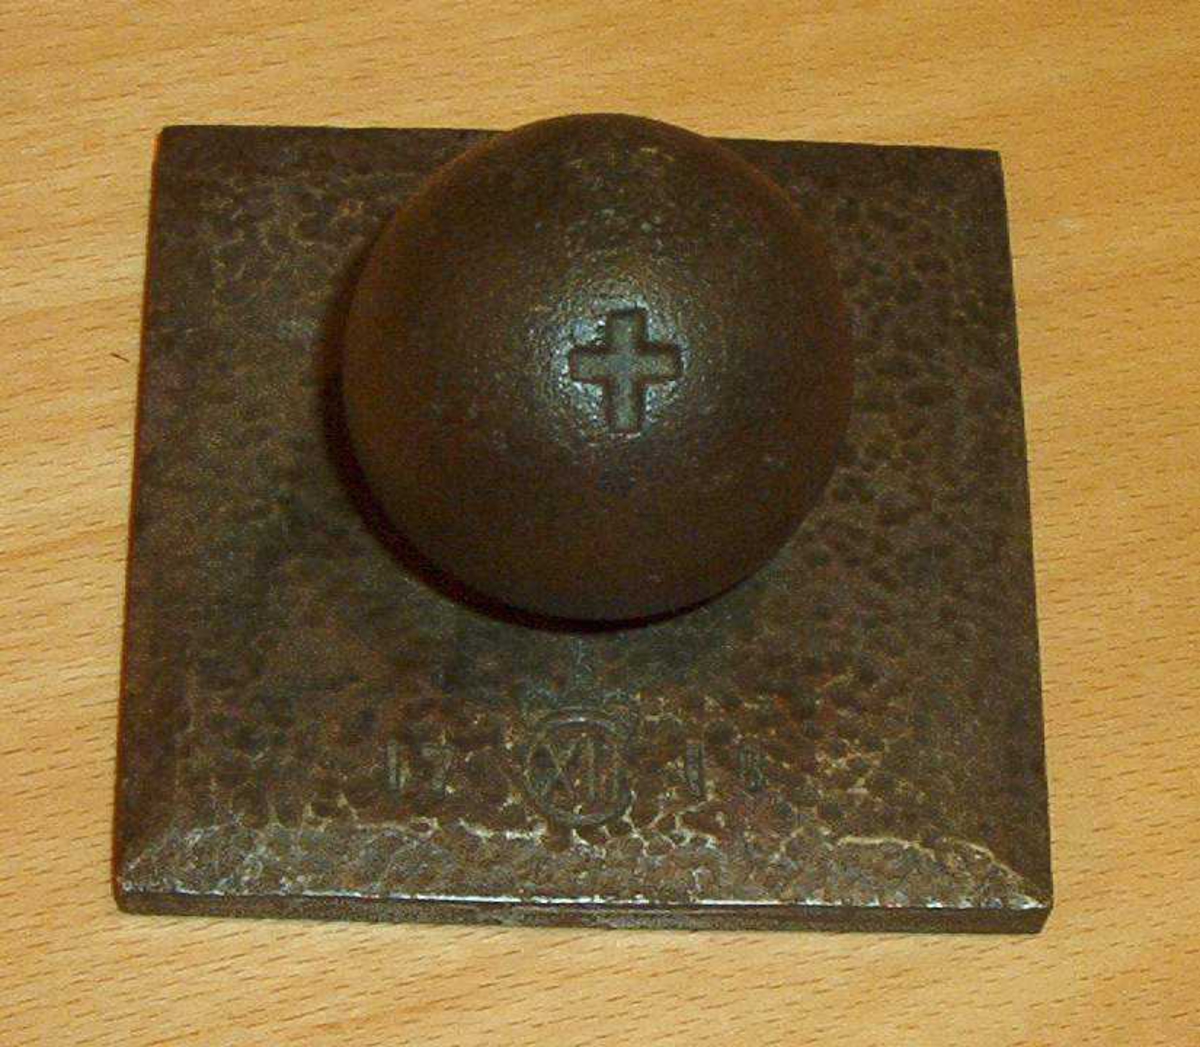 Jernkule skrudd fast i en kvadratisk jernplate.  Et kors er gravert på kulen.  På platen er årstallet 1718 og et monogram.

